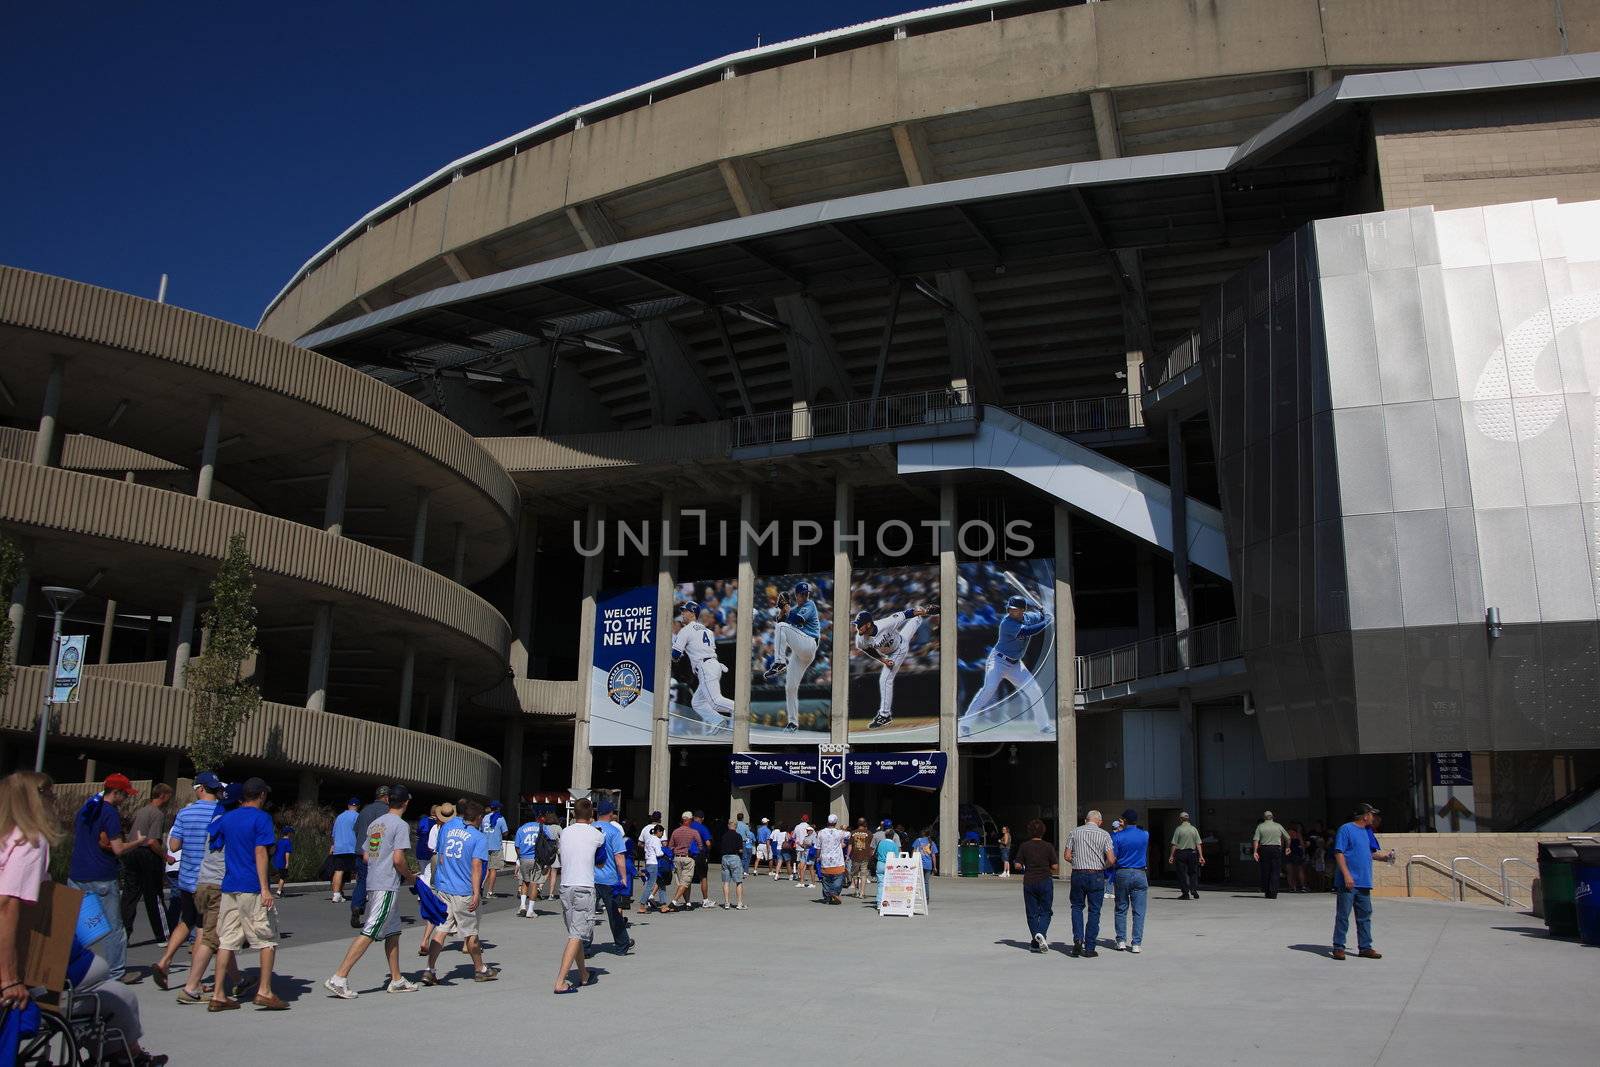 Fans enter the remodeled Royals home ballpark